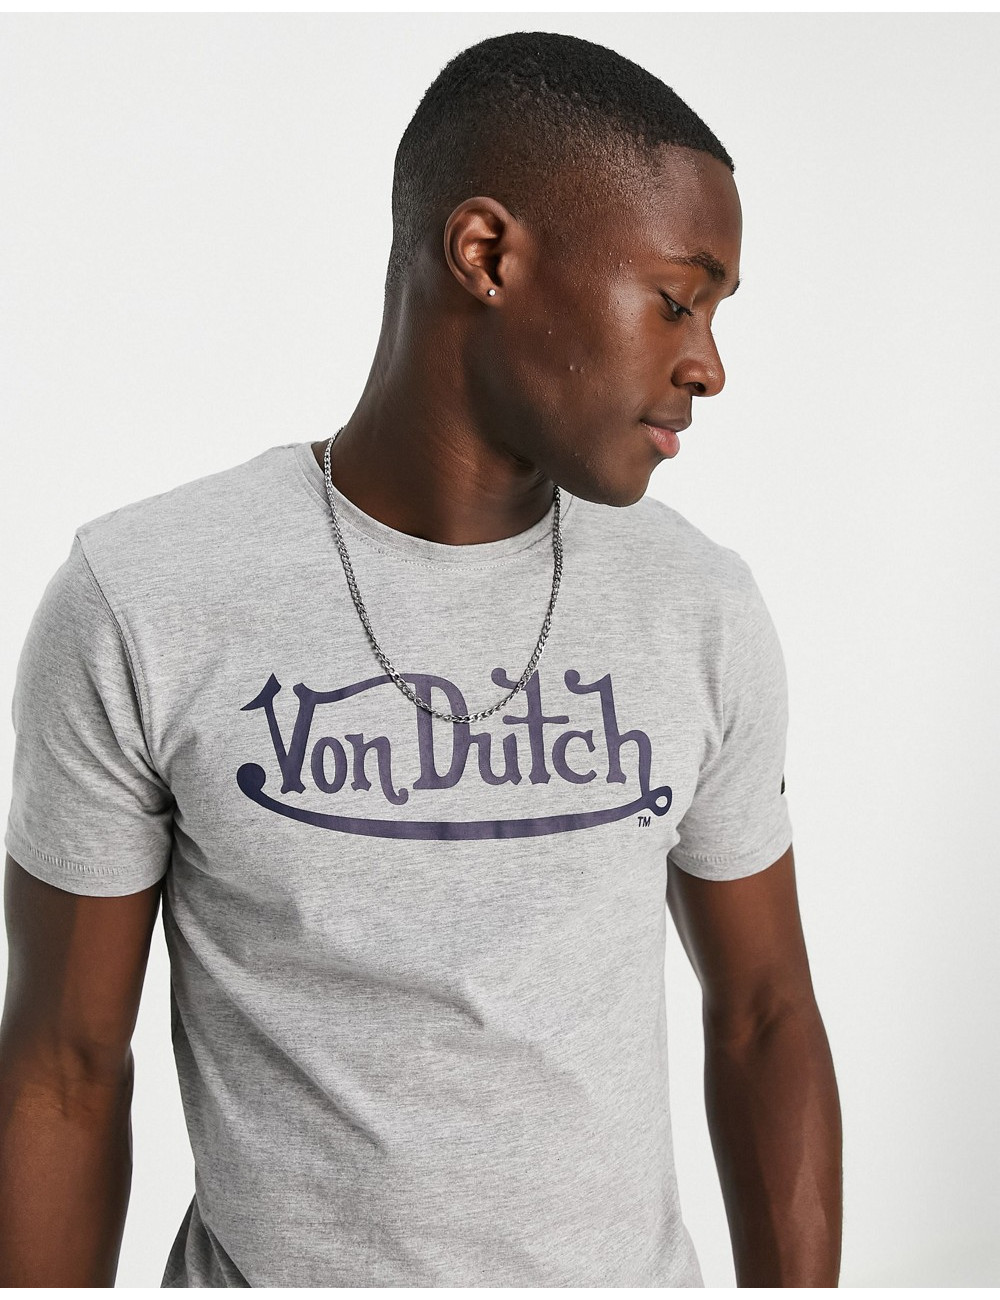 Von Dutch alfa t-shirt in grey